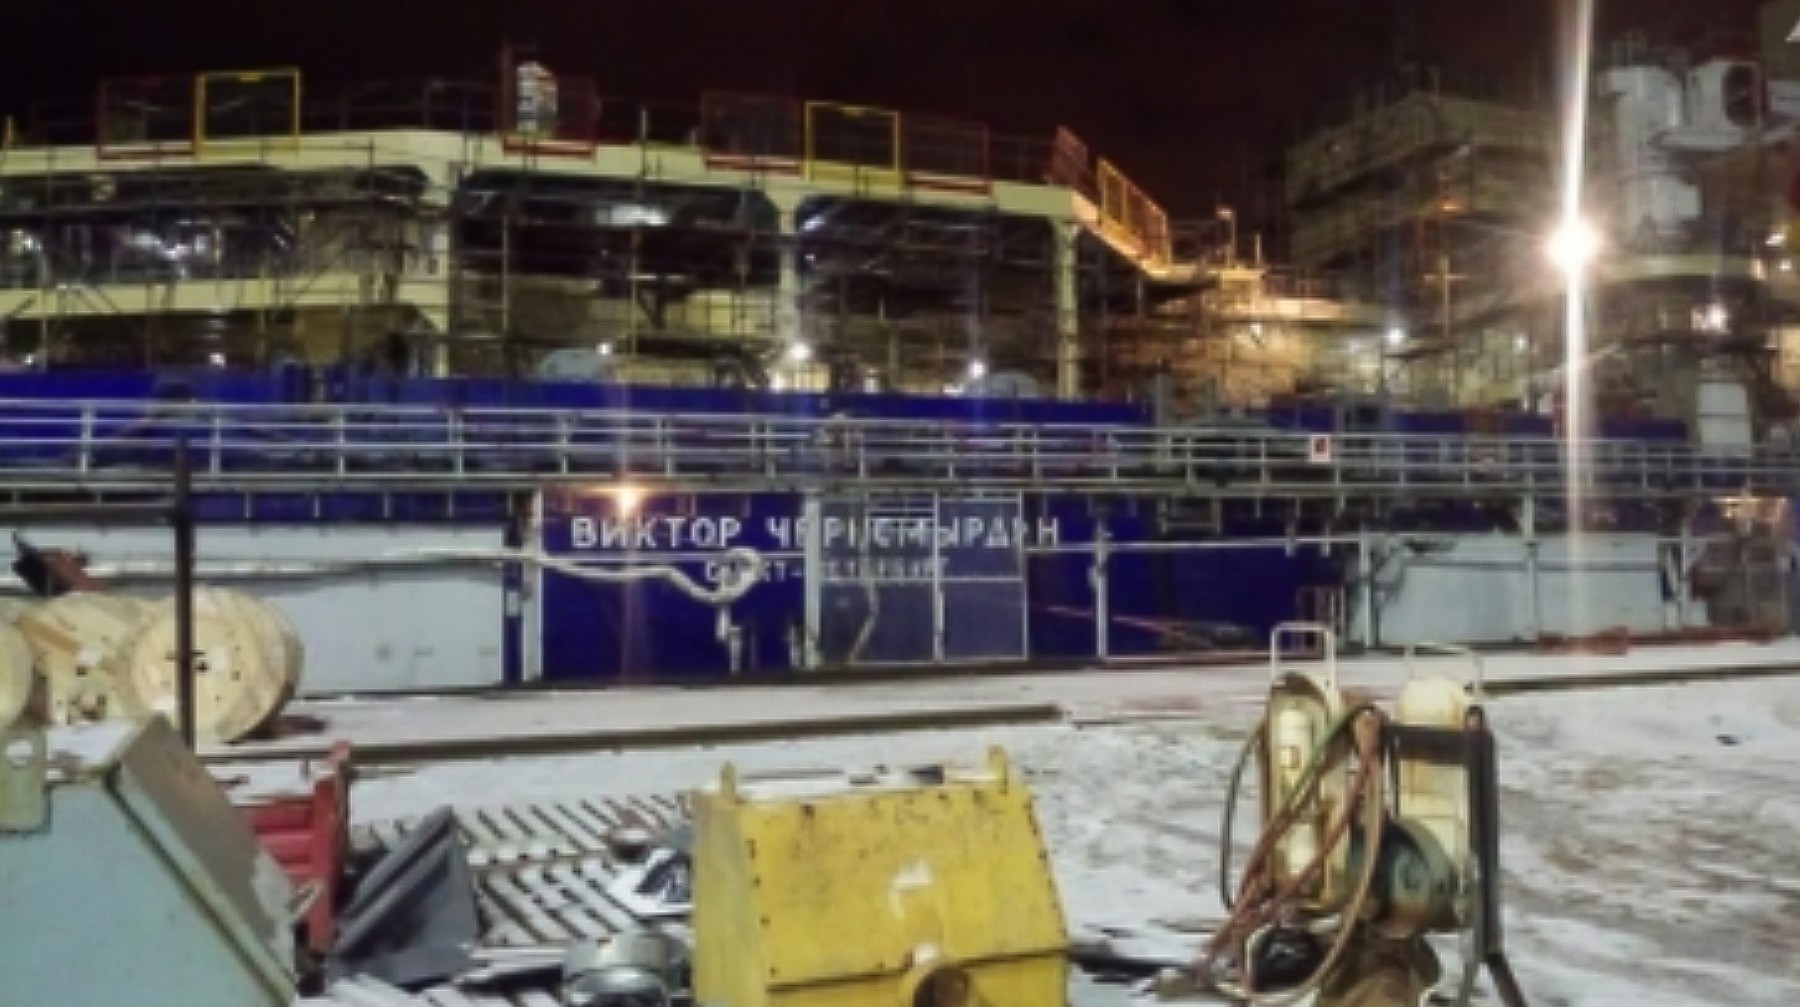 Dailystorm - Двое пострадали при пожаре на строящемся ледоколе «Виктор Черномырдин» в Петербурге